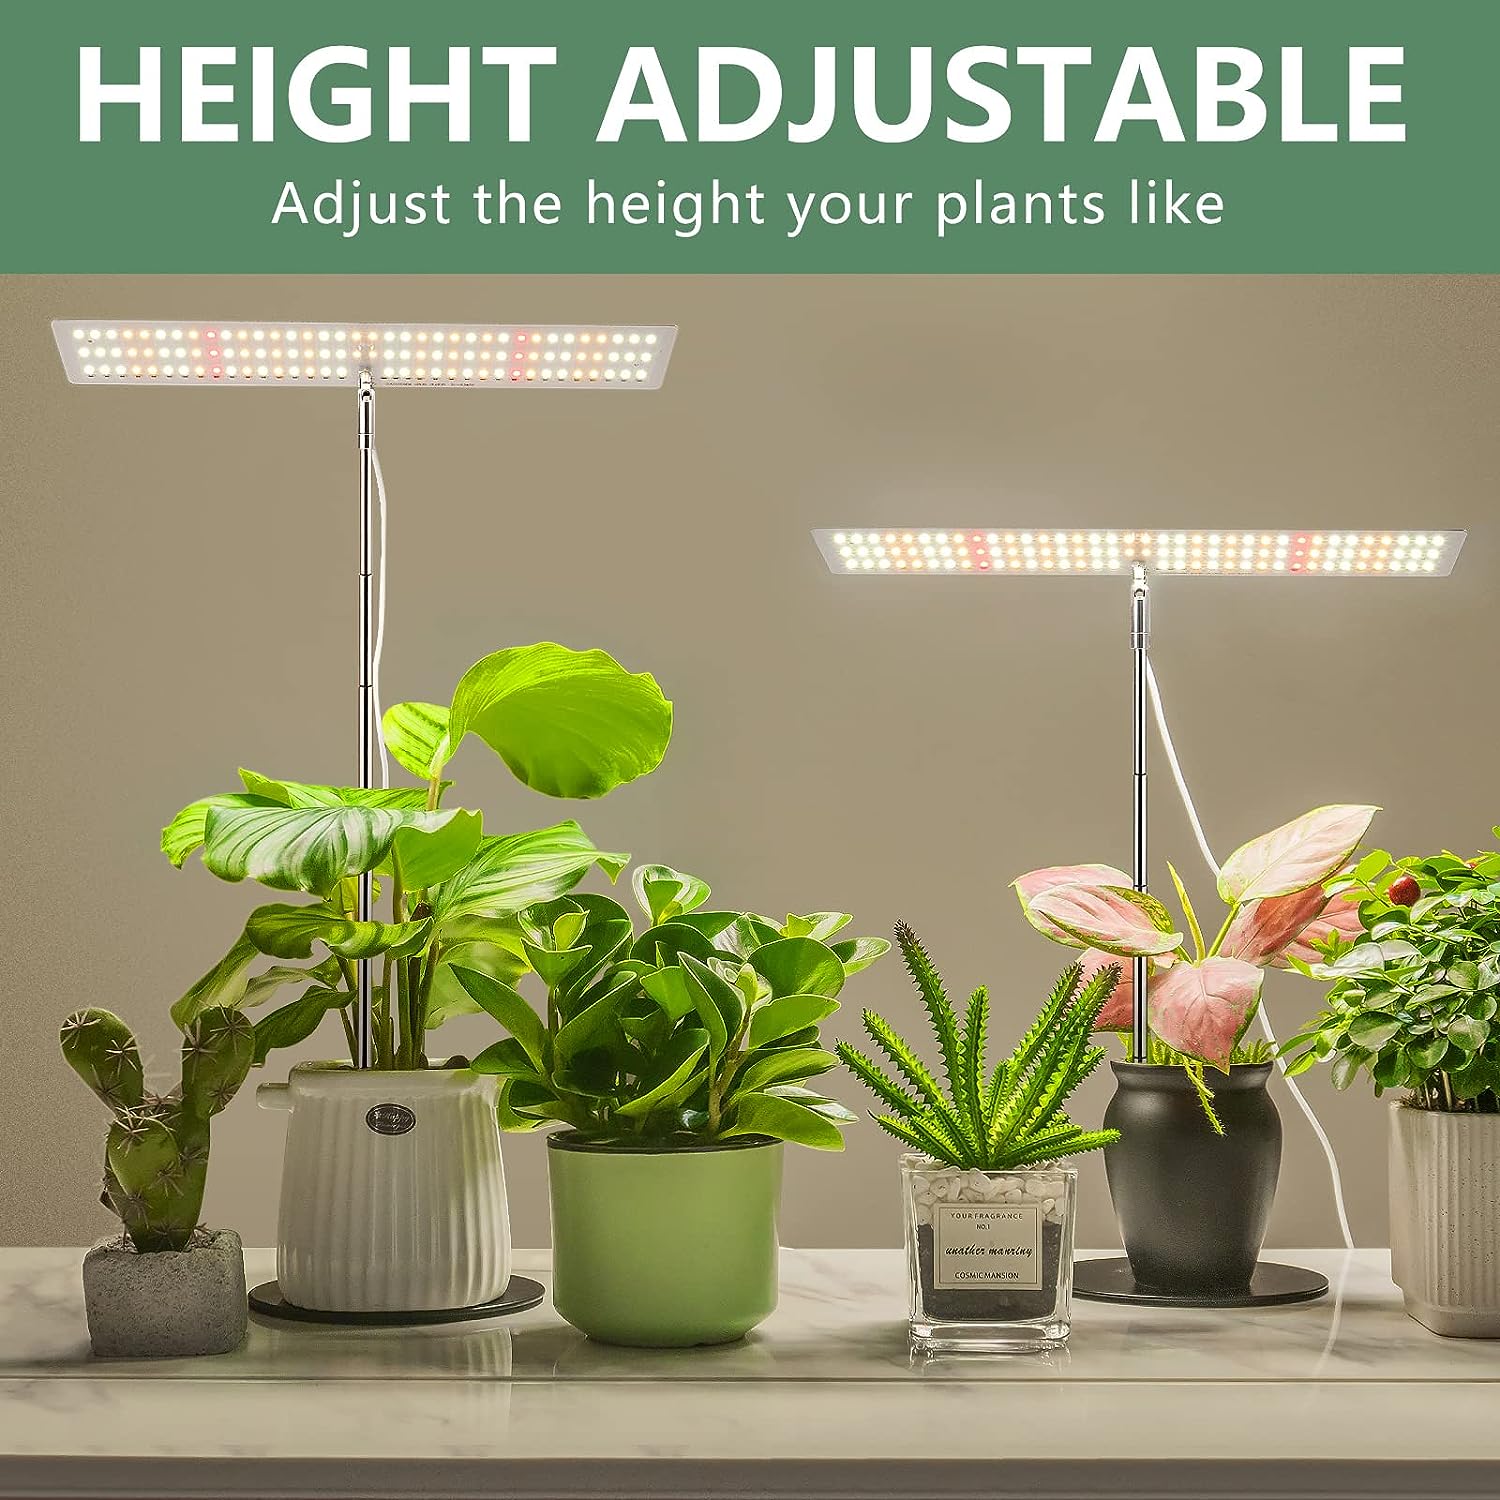 Full Spectrum LED Plant Light Review - The Grower's Light Hub